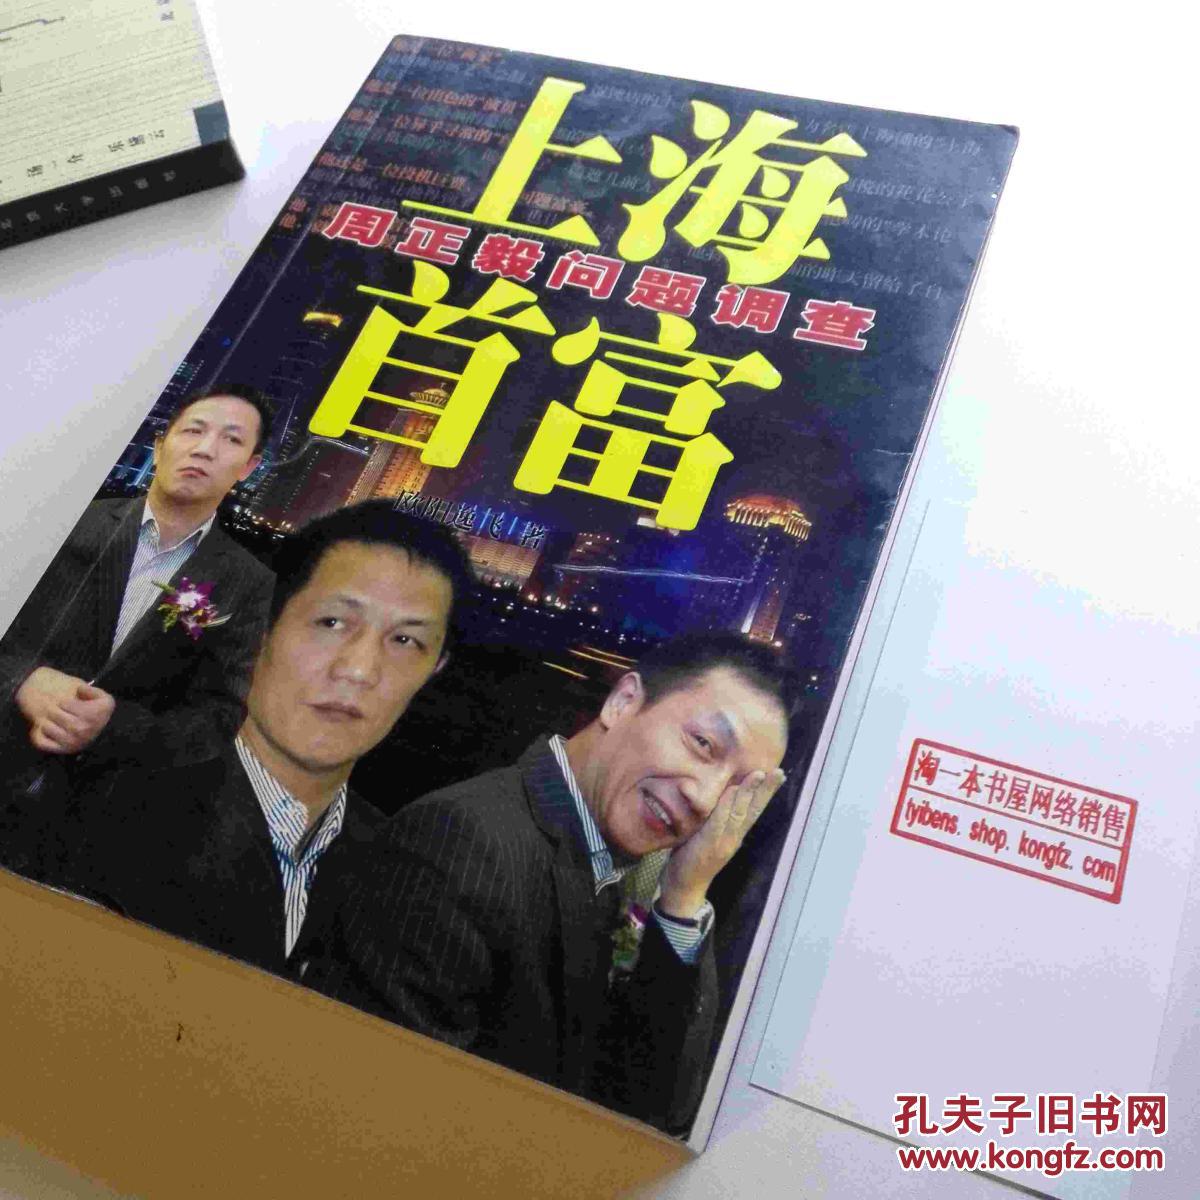 上海私家侦探公司哪家好_上海侦探公司021007_上海名邦侦探公司